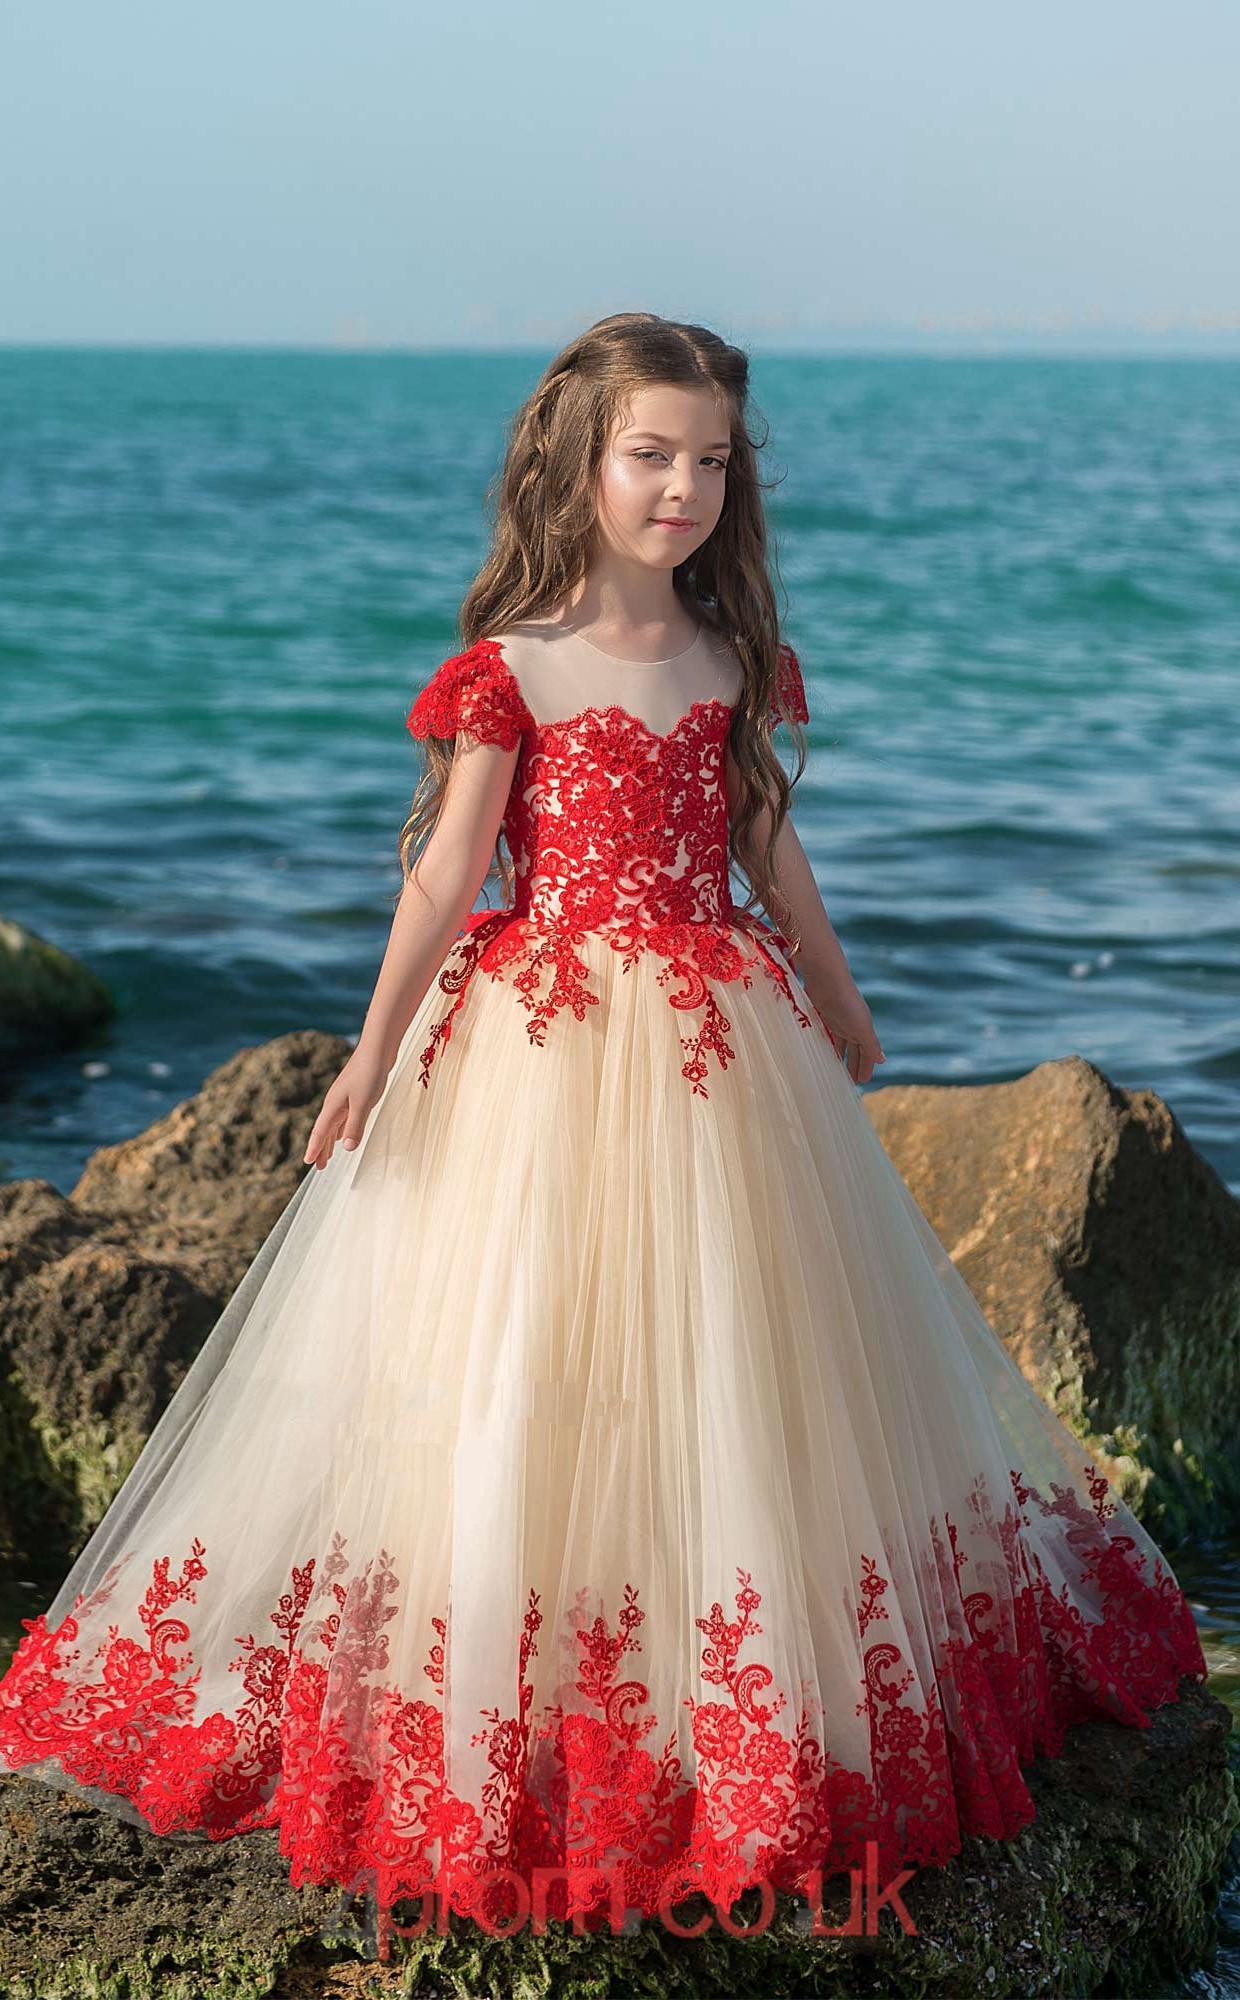 Bridesmaid Dresses For Kids - nelsonismissing